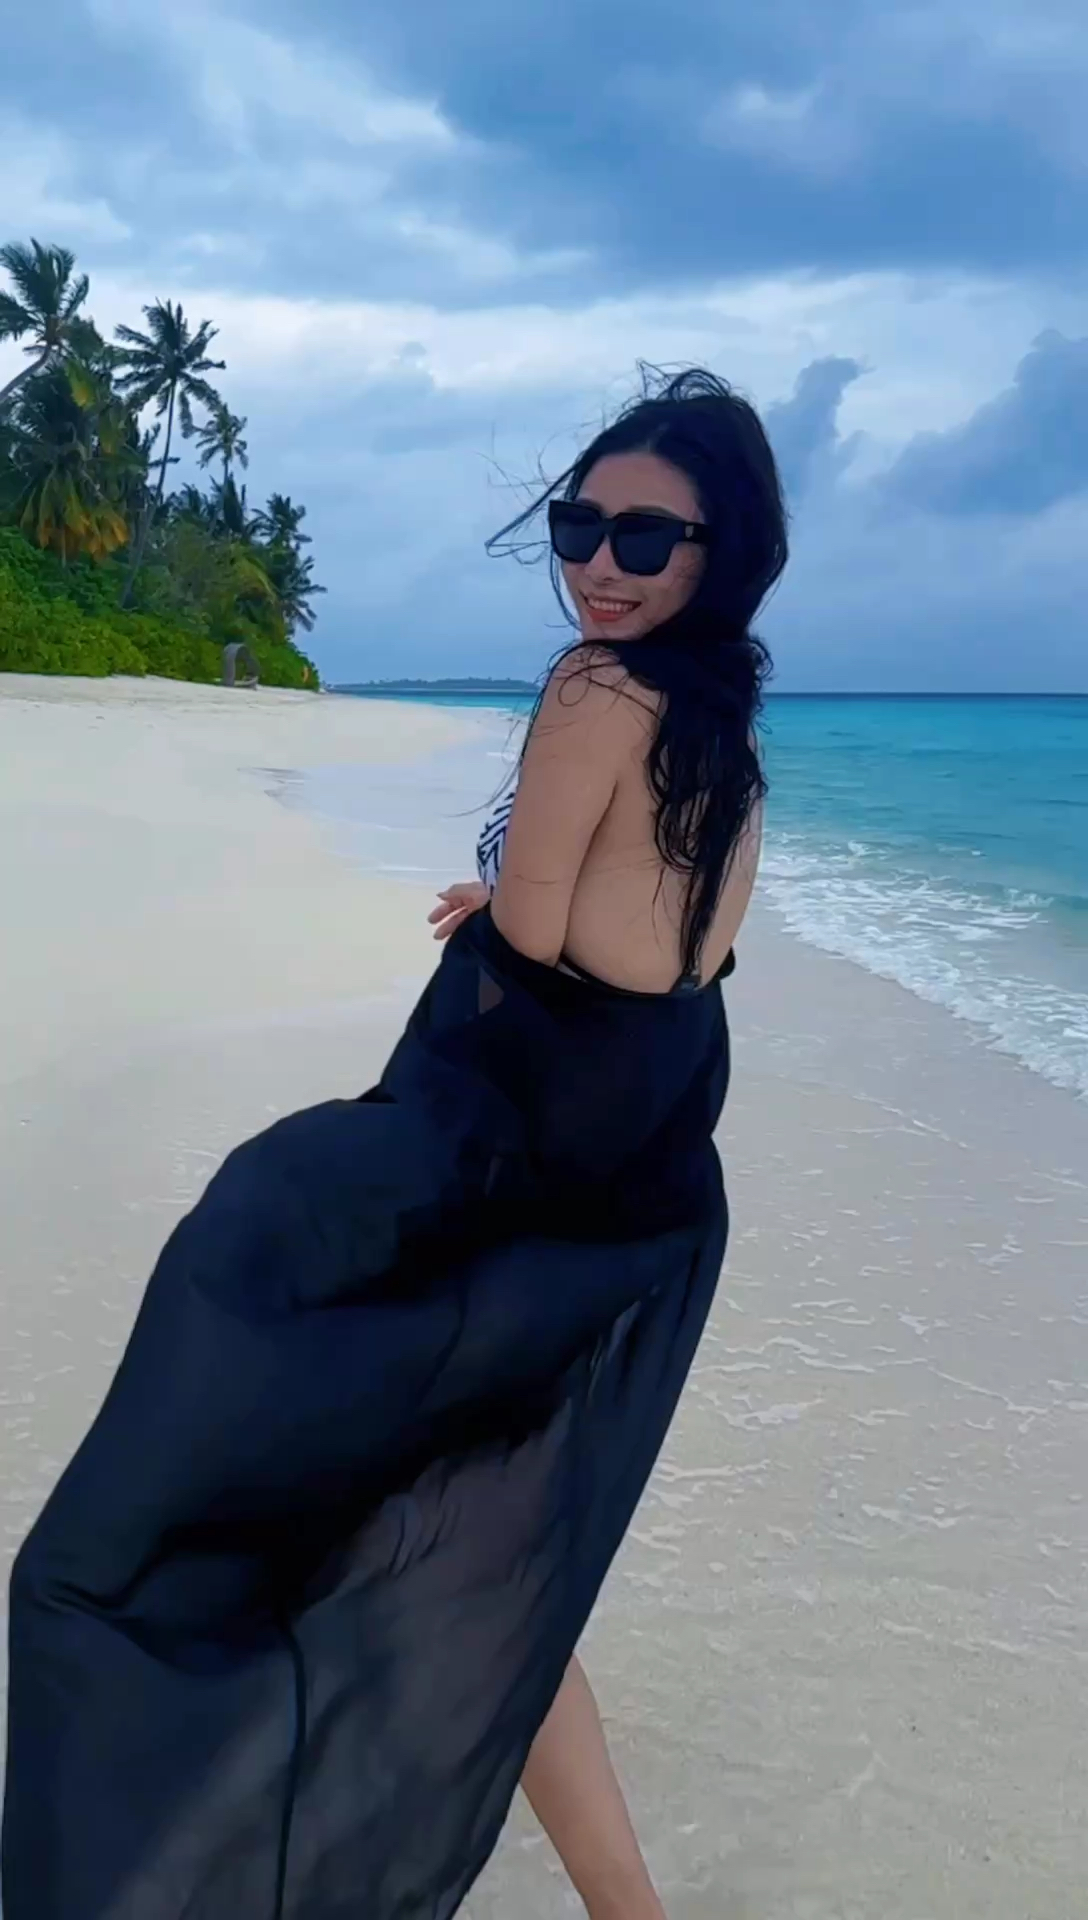 深呼吸，感受当下🌊#旅行大玩家 #马尔代夫 #海岛度假